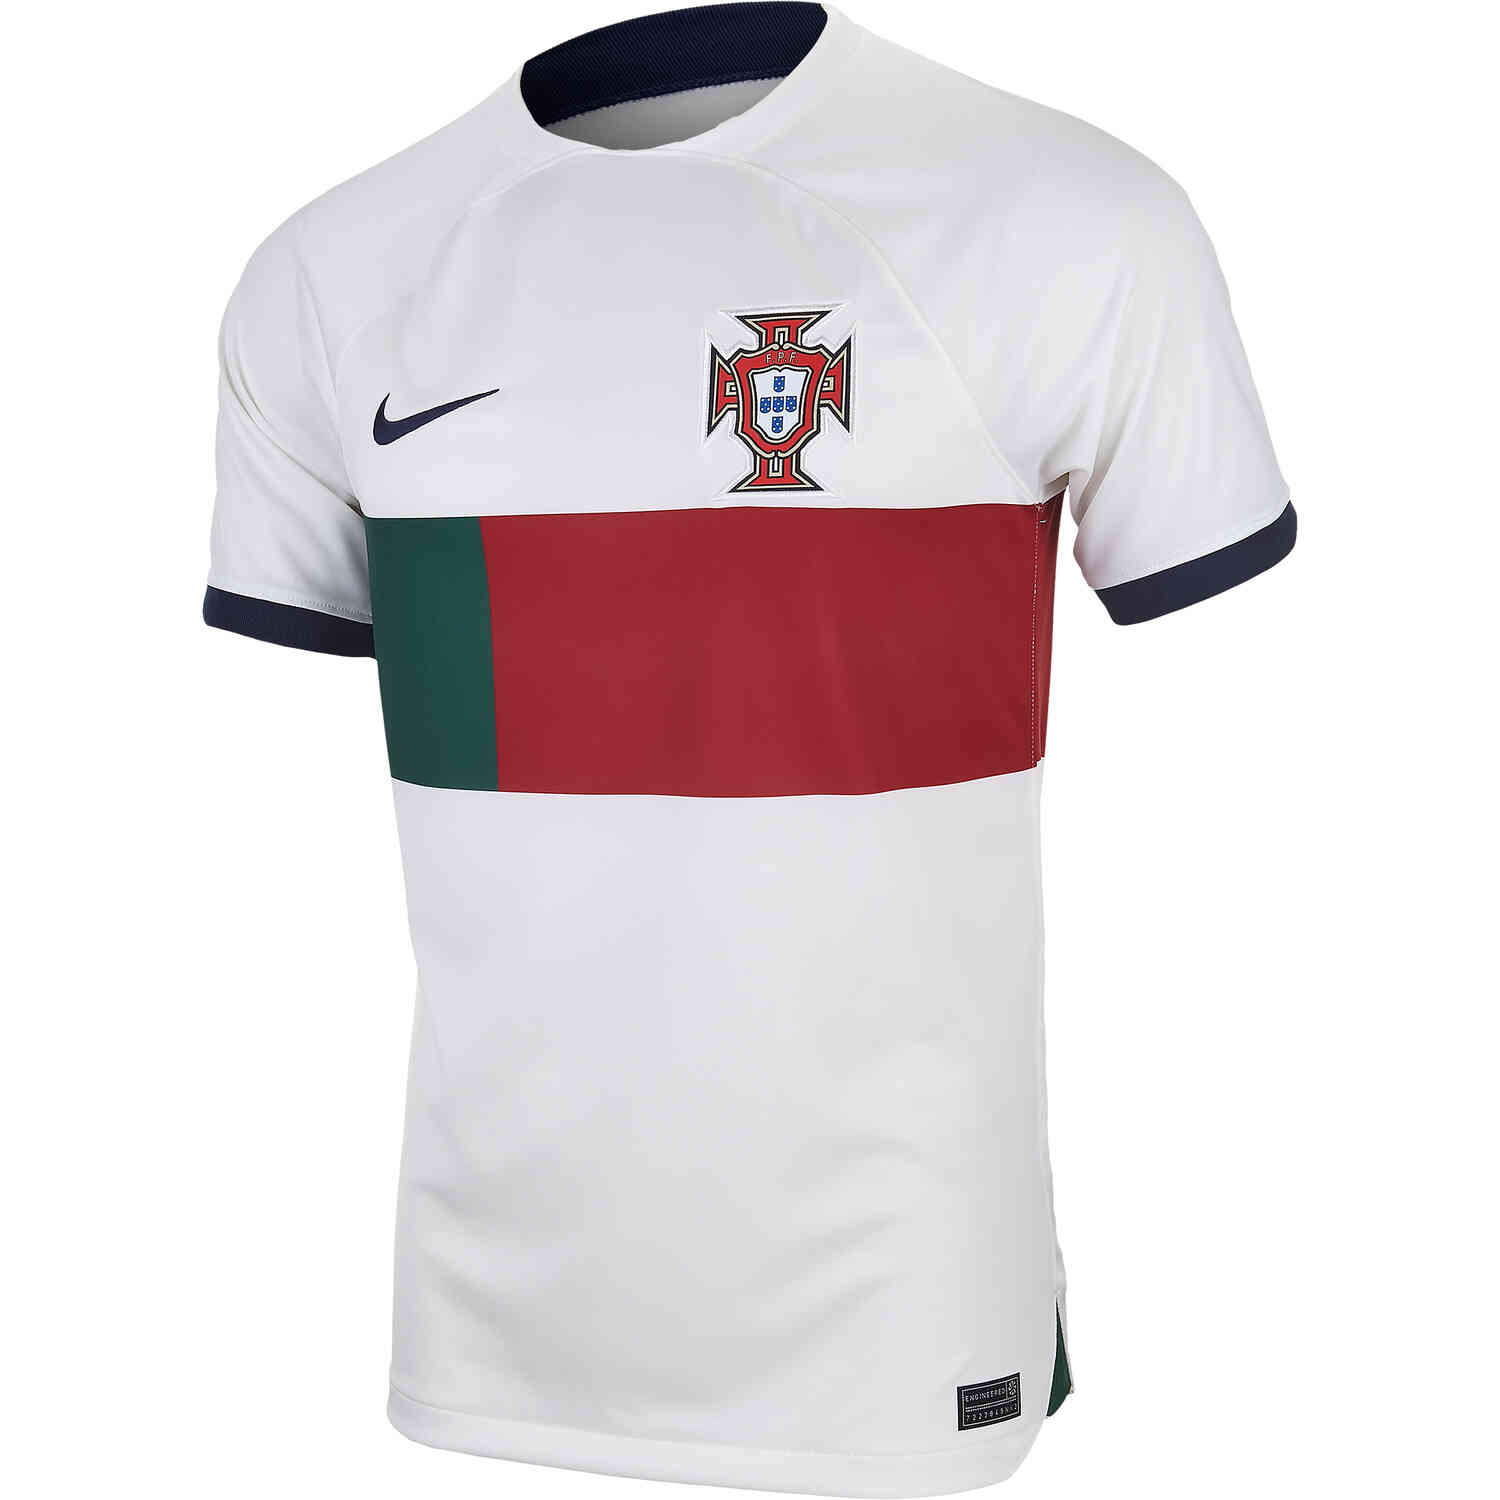 2022 Nike Portugal Away Jersey - SoccerPro